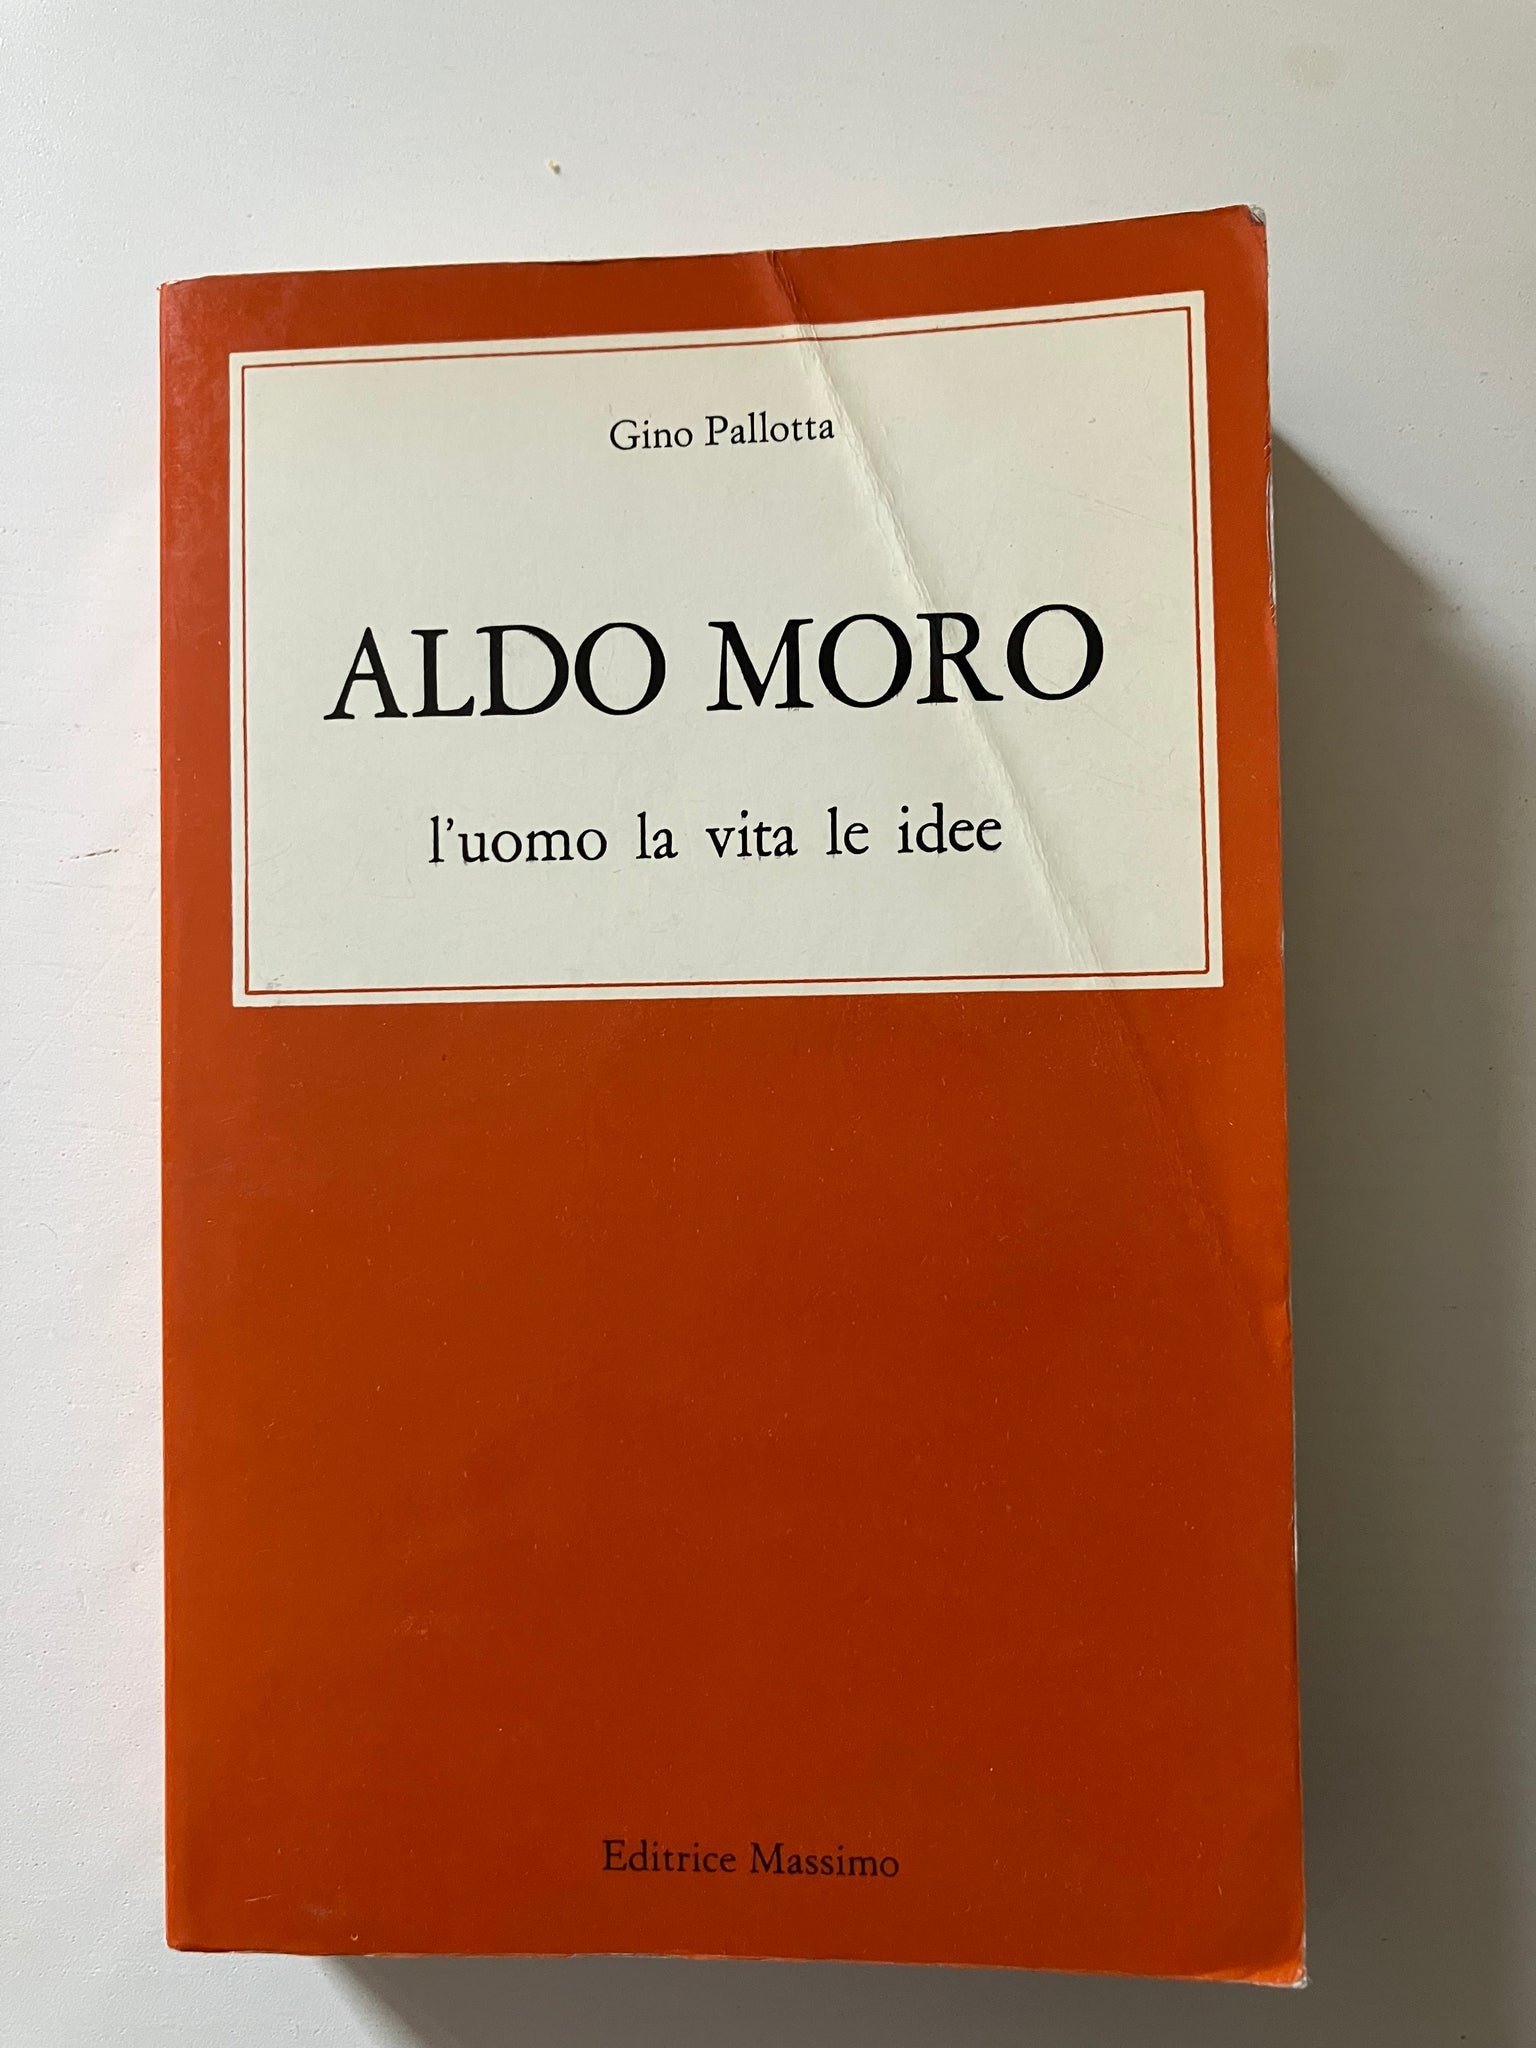 Gino Pallotta - Aldo Moro L'uomo la vita le idee